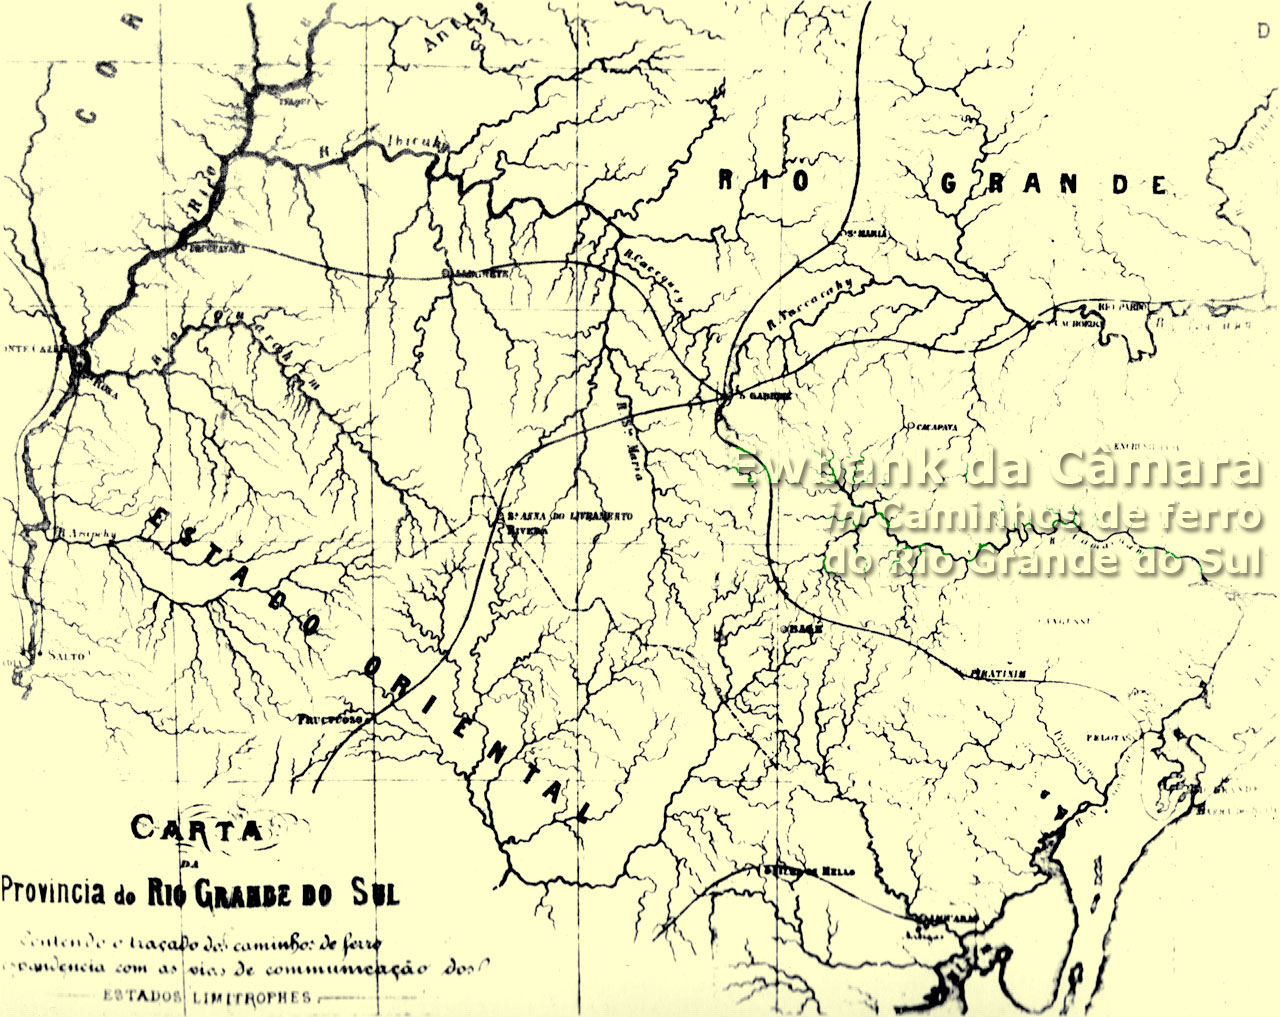 Mapa traçado por Ewbank da Câmara com as ferrovias brasileiras que deveriam corresponder às ferrovias uruguaias e argentinas